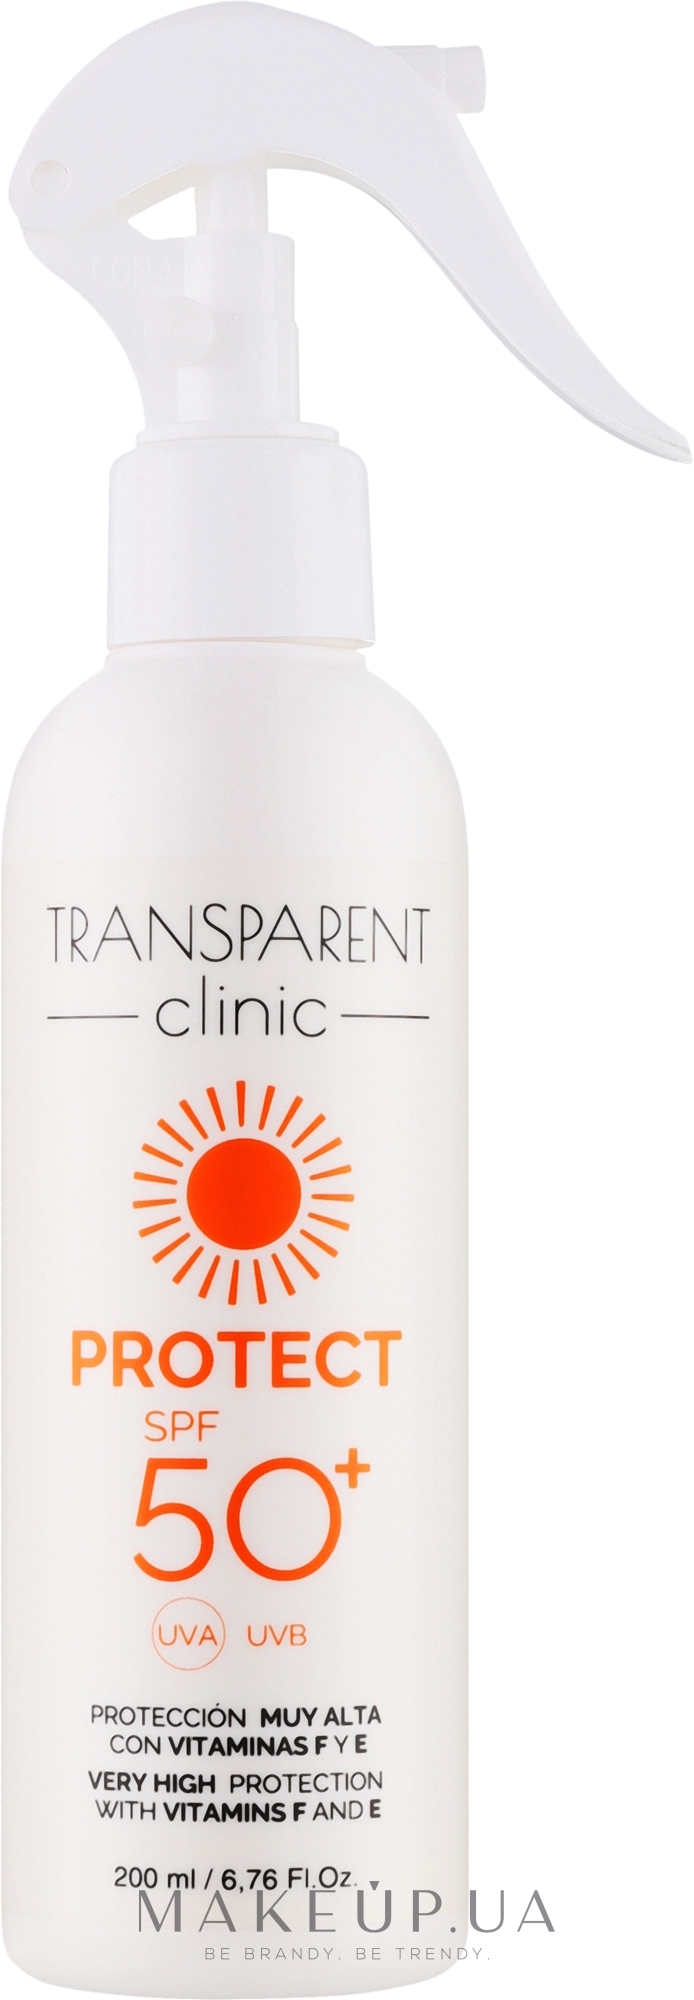 Сонцезахисний спрей для тіла - Transparent Clinic Protect SPF50+ — фото 200ml